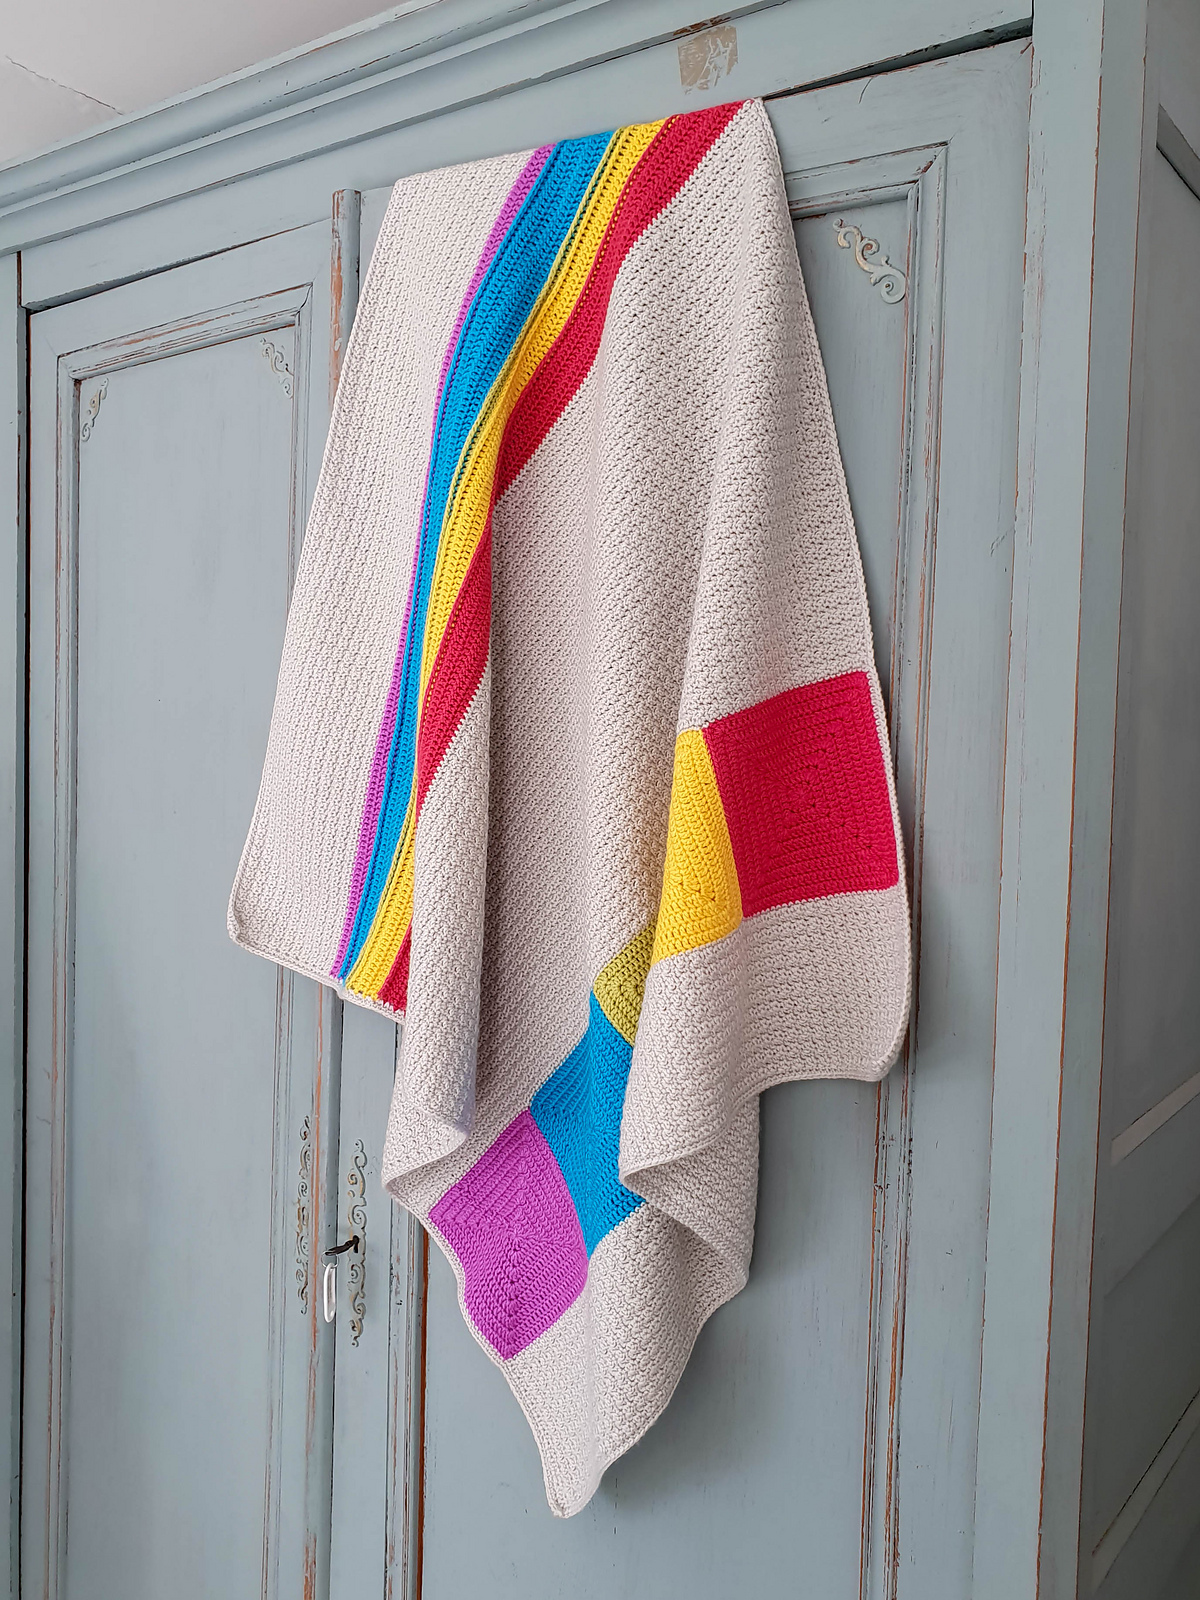 easy-crochet-for-baby-blanket-patterns-new-season-2019